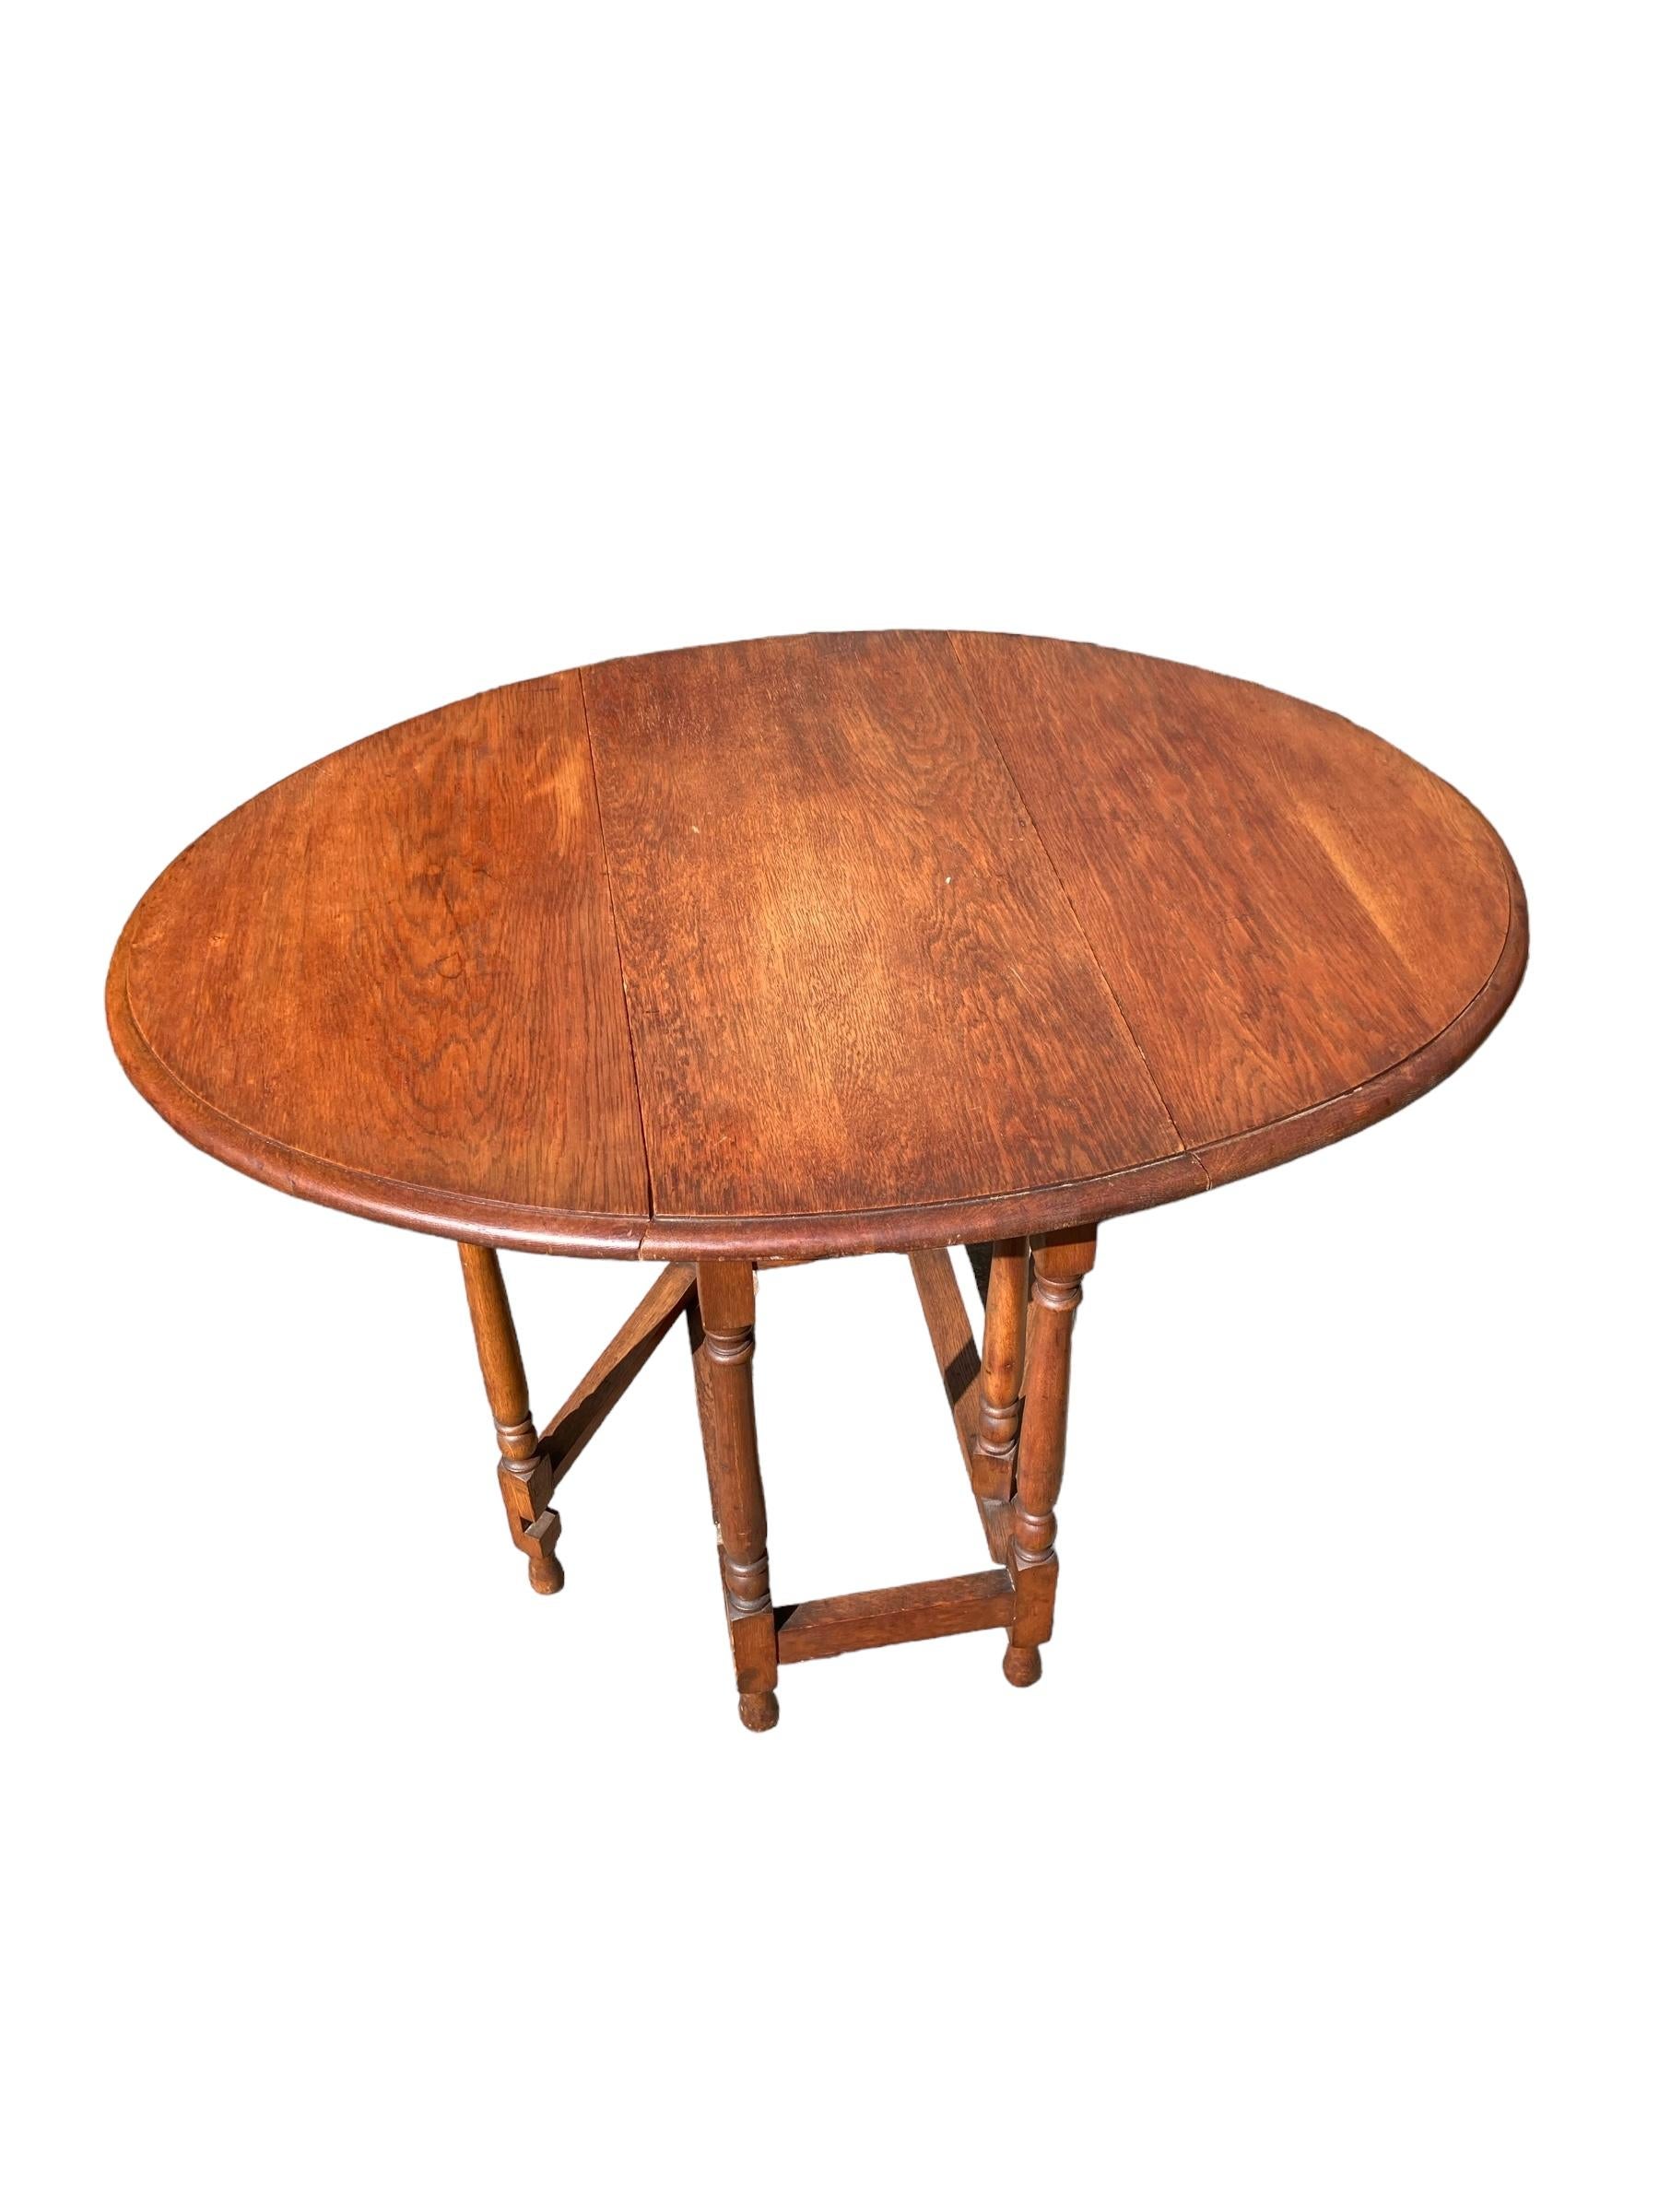 Table à feuilles tombantes en chêne vintage, pieds pivotants, belle couleur et grain du bois. Style pliable pratique pour les petites surfaces.

Qu'il s'agisse d'antiquités, d'art déco, de milieu de siècle ou de fin de siècle, nous choisissons des